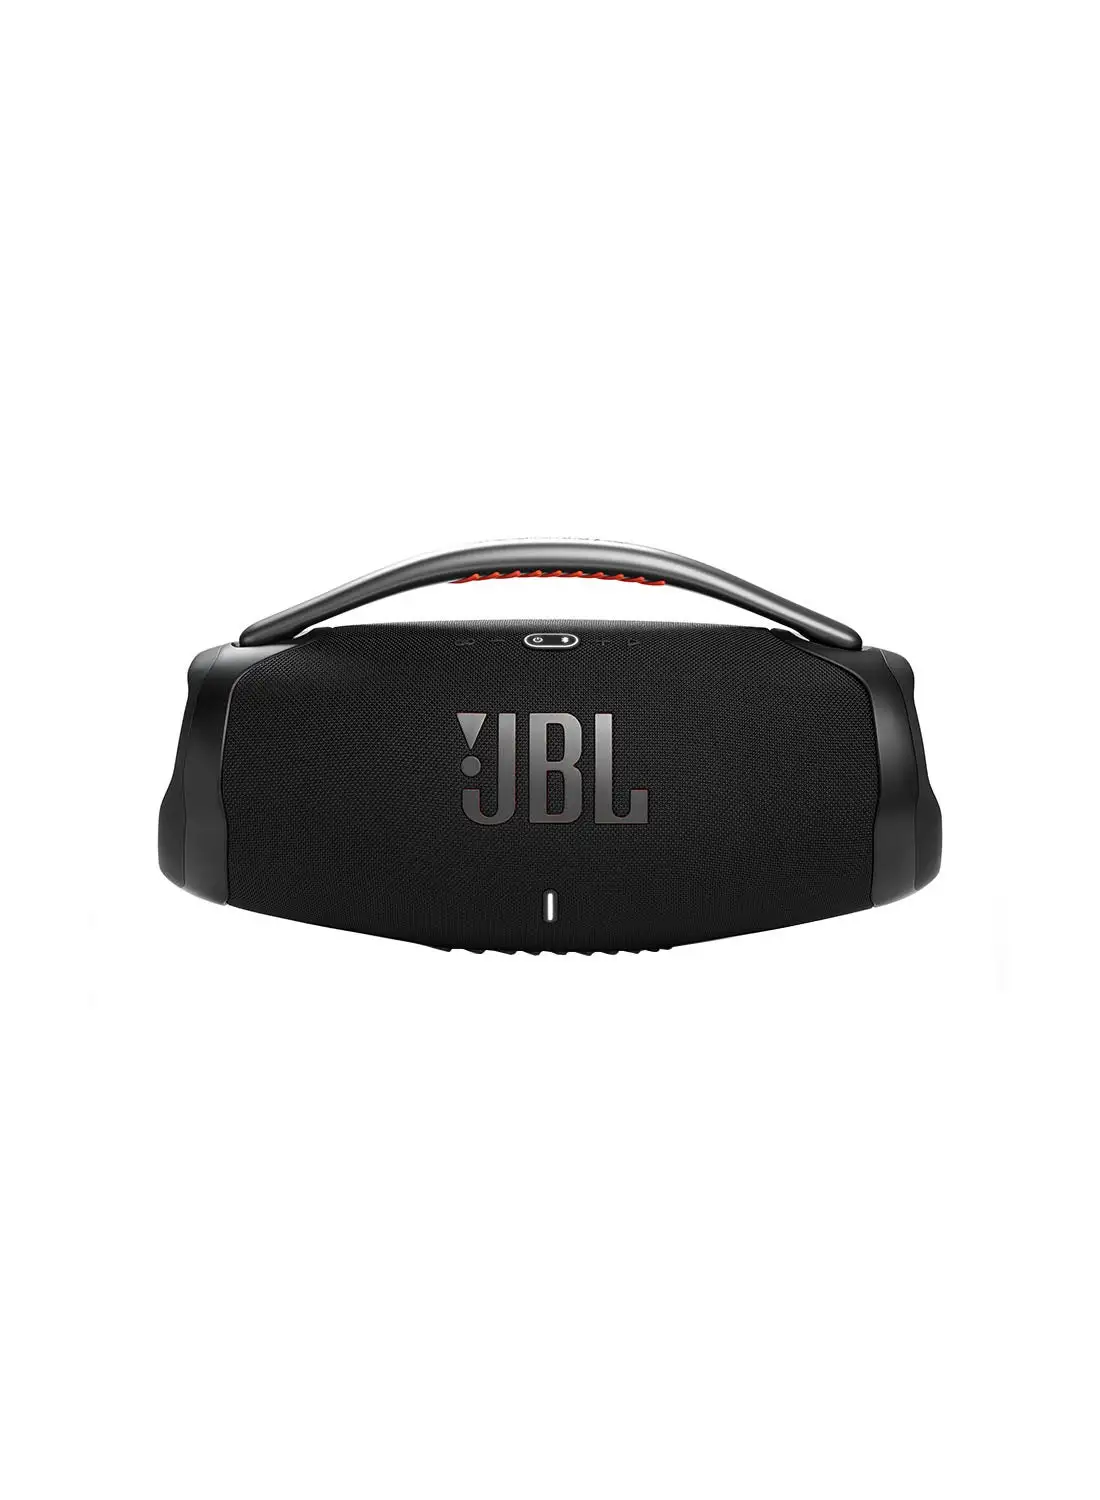 مكبر صوت محمول JBL Boombox 3 مع صوت هائل سيغنتشر برو أسود